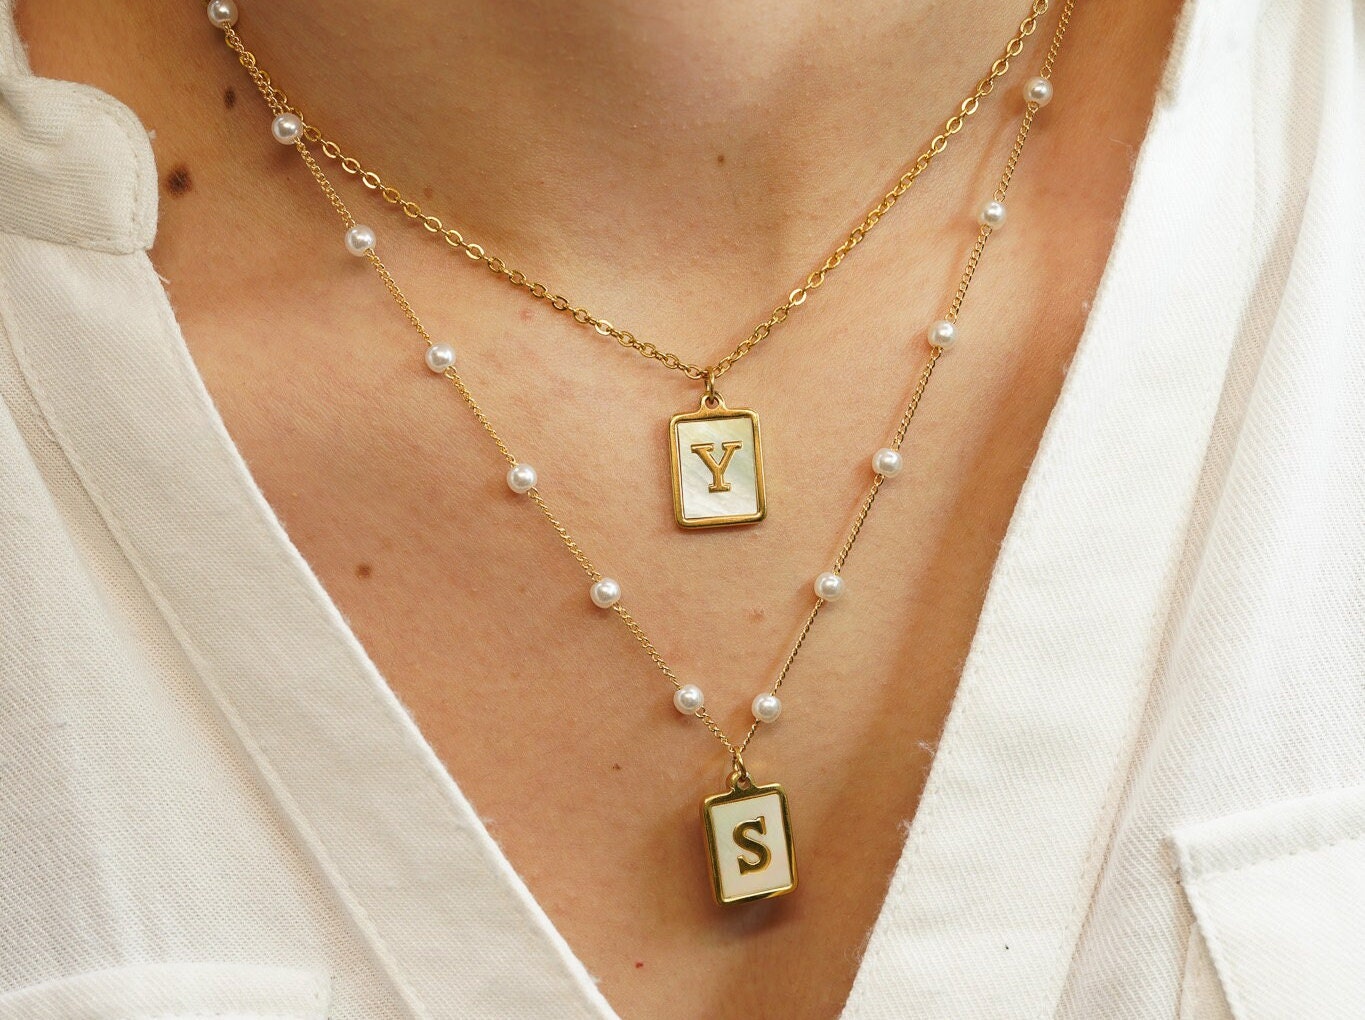 Louis Vuitton Pandantif Monogram Star Nacre Necklace/Pendant